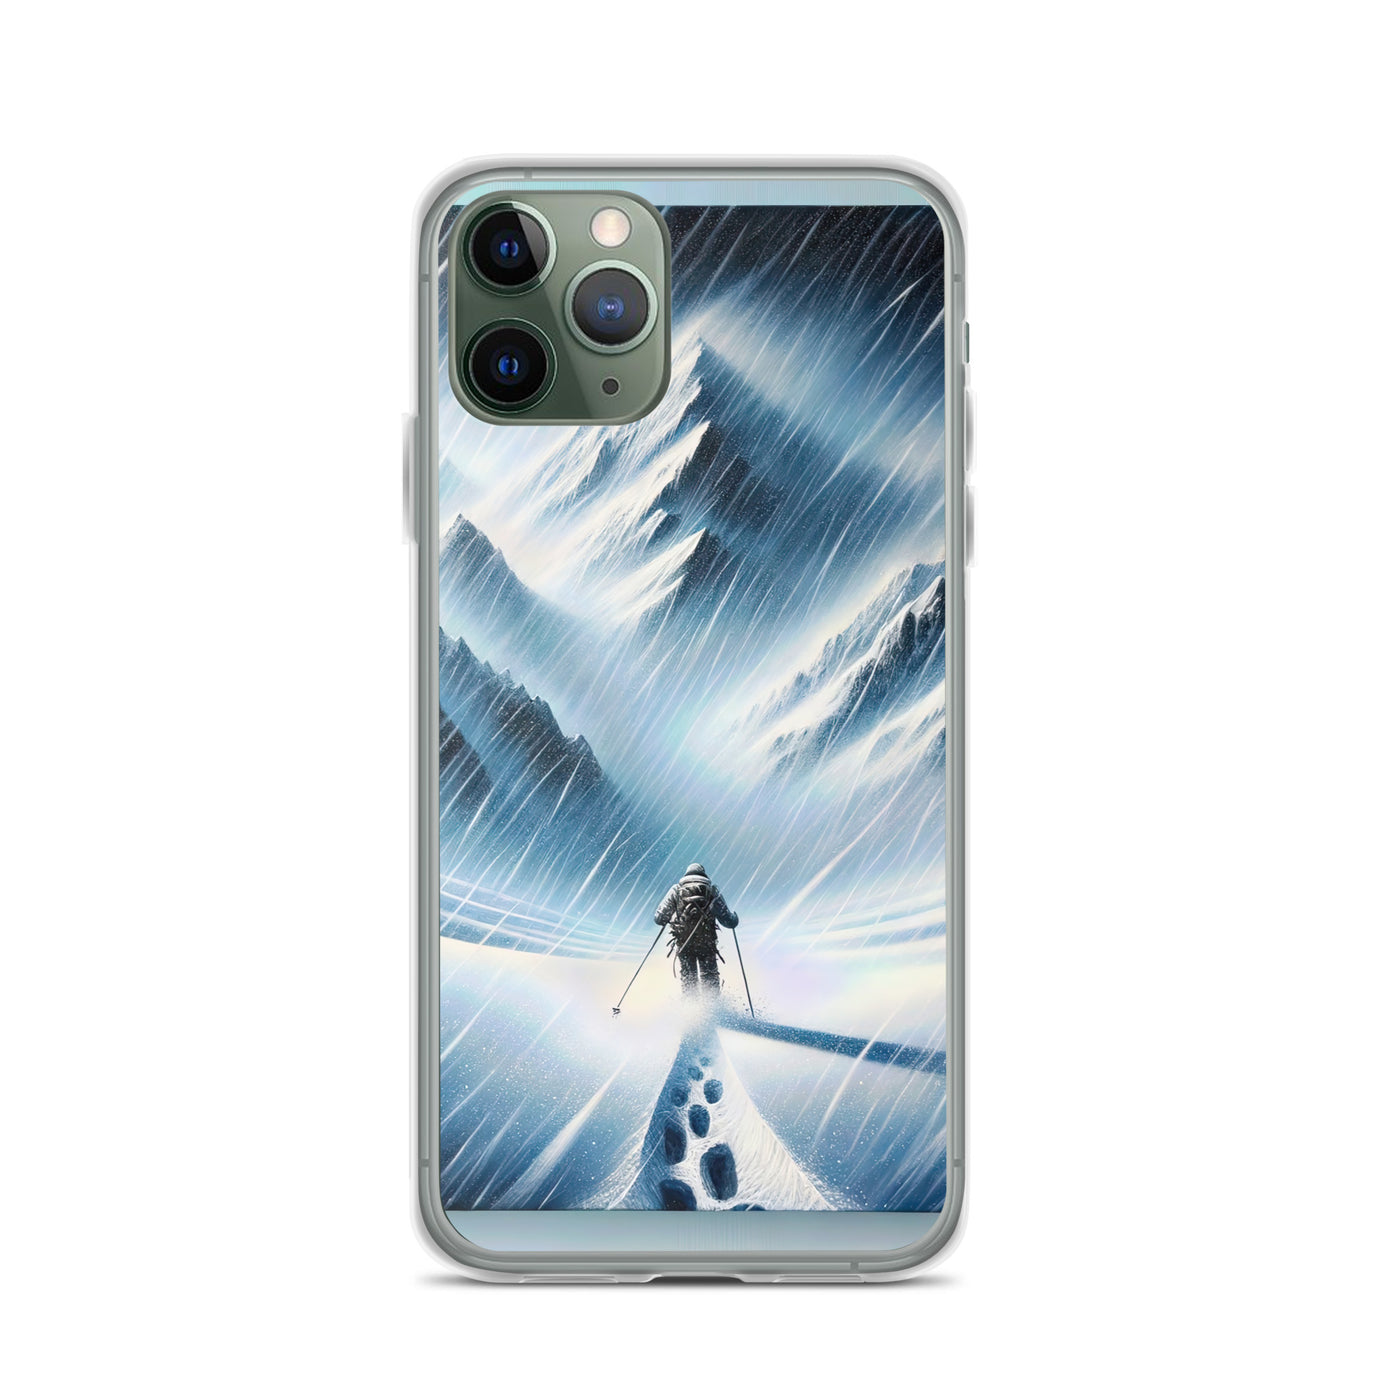 Wanderer und Bergsteiger im Schneesturm: Acrylgemälde der Alpen - iPhone Schutzhülle (durchsichtig) wandern xxx yyy zzz iPhone 11 Pro